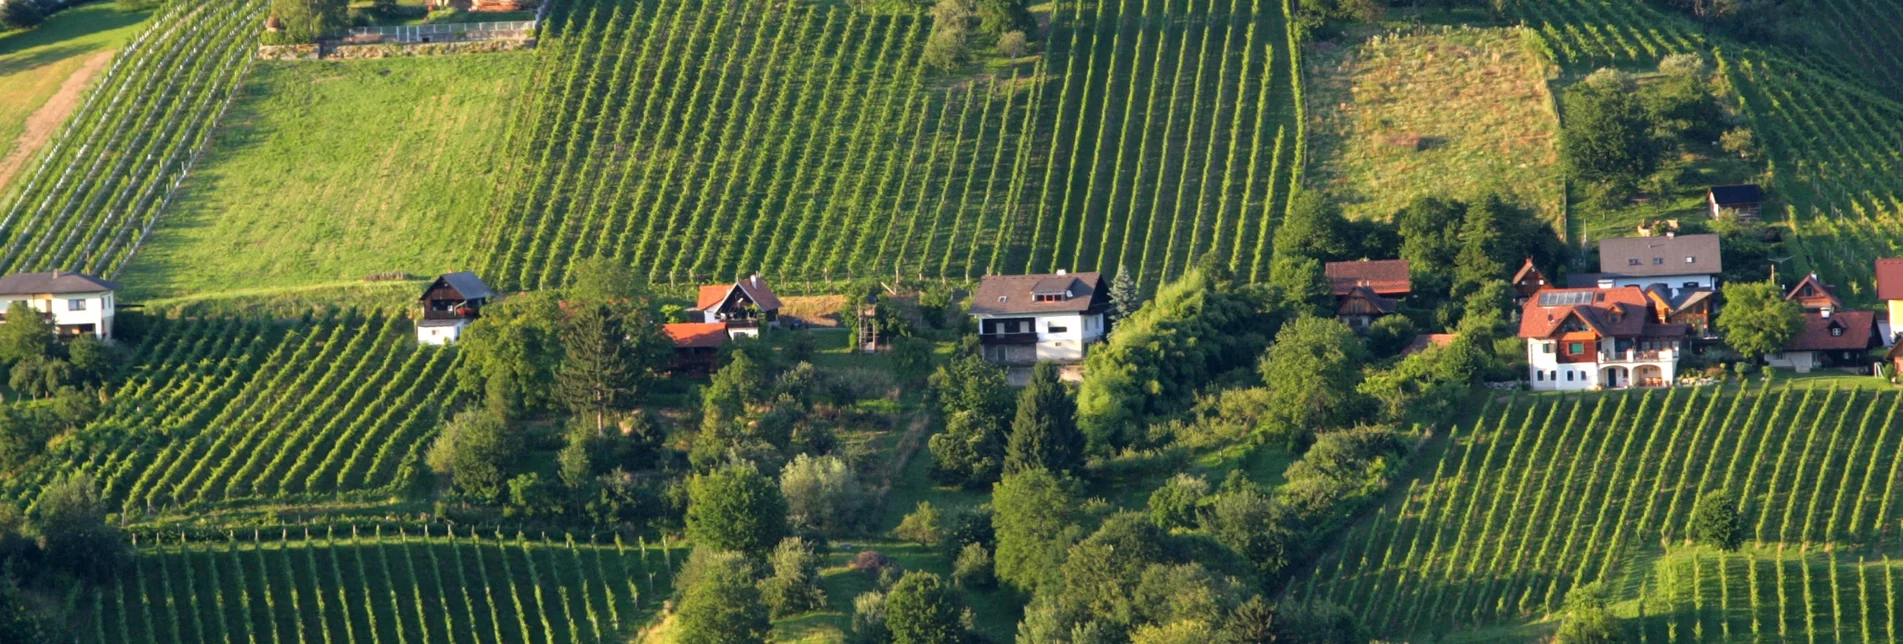 Wanderung Etappe 19 Vom Gletscher zum Wein Südroute Deutschlandsberg - Bad Schwanberg - Touren-Impression #1 | © Steiermark Tourismus/Harry Schiffer